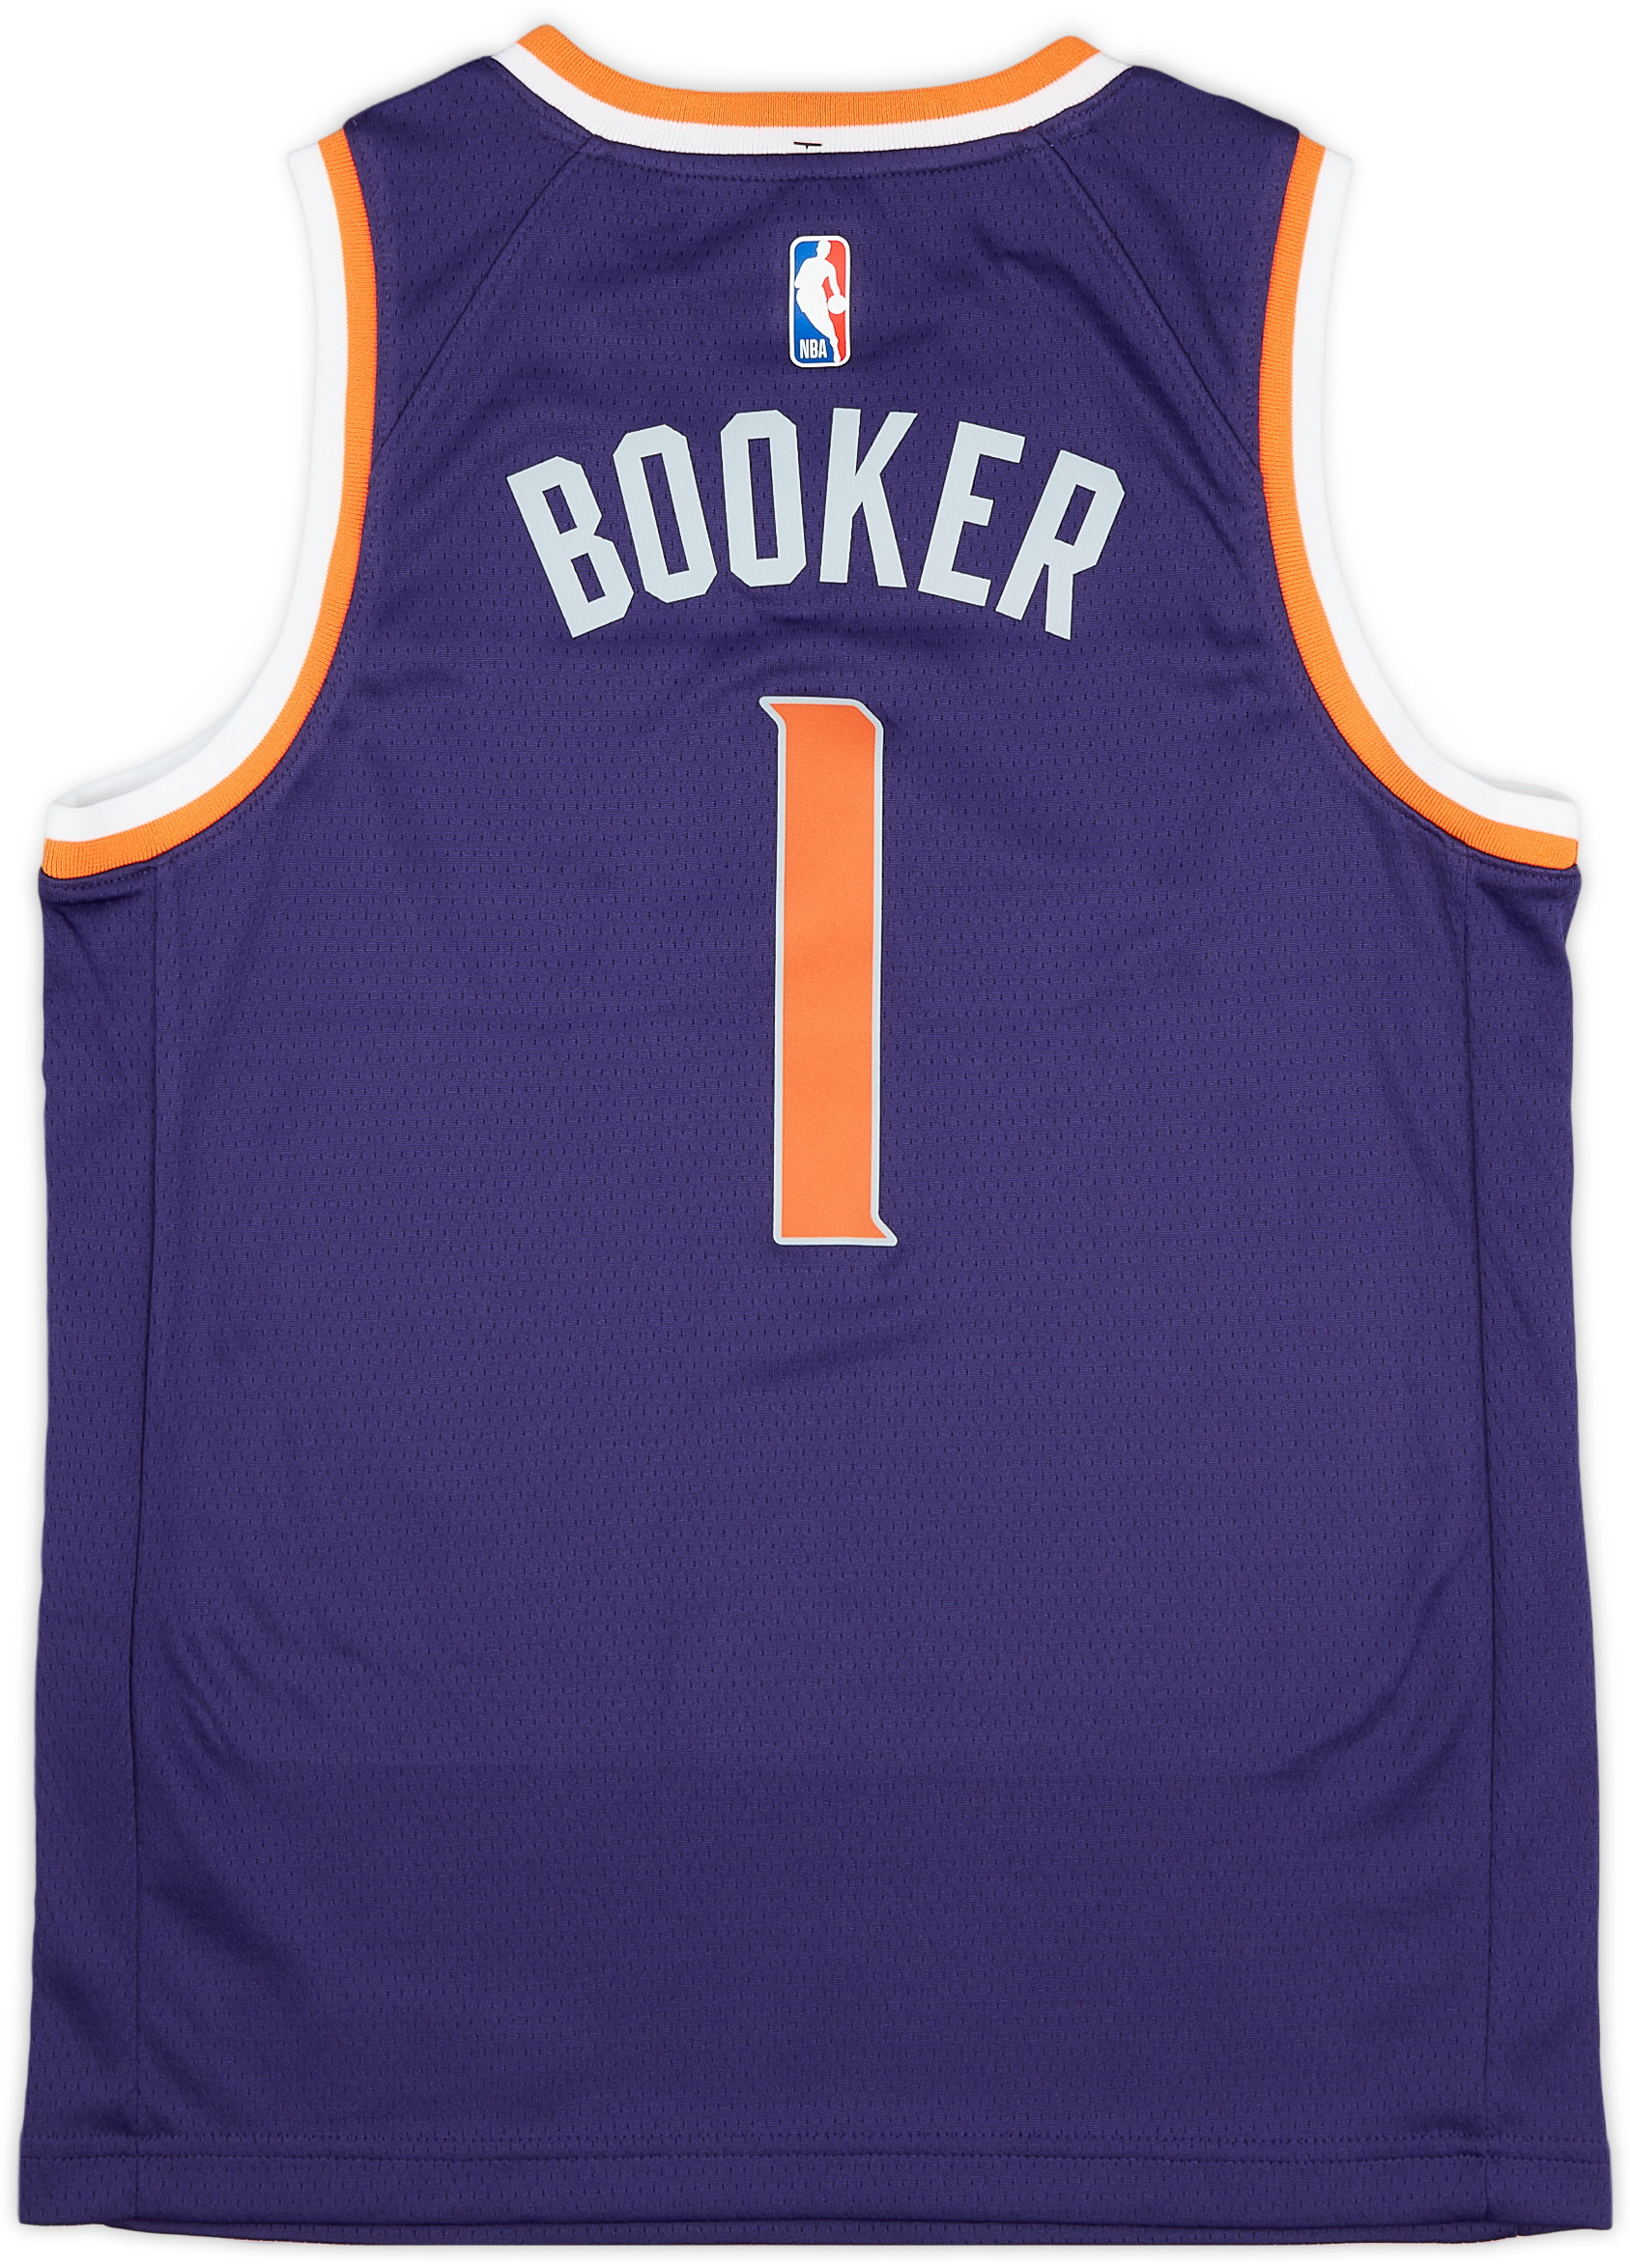 2022-23 Phoenix Suns Booker #1 Nike Swingman Alternate Jersey (S)